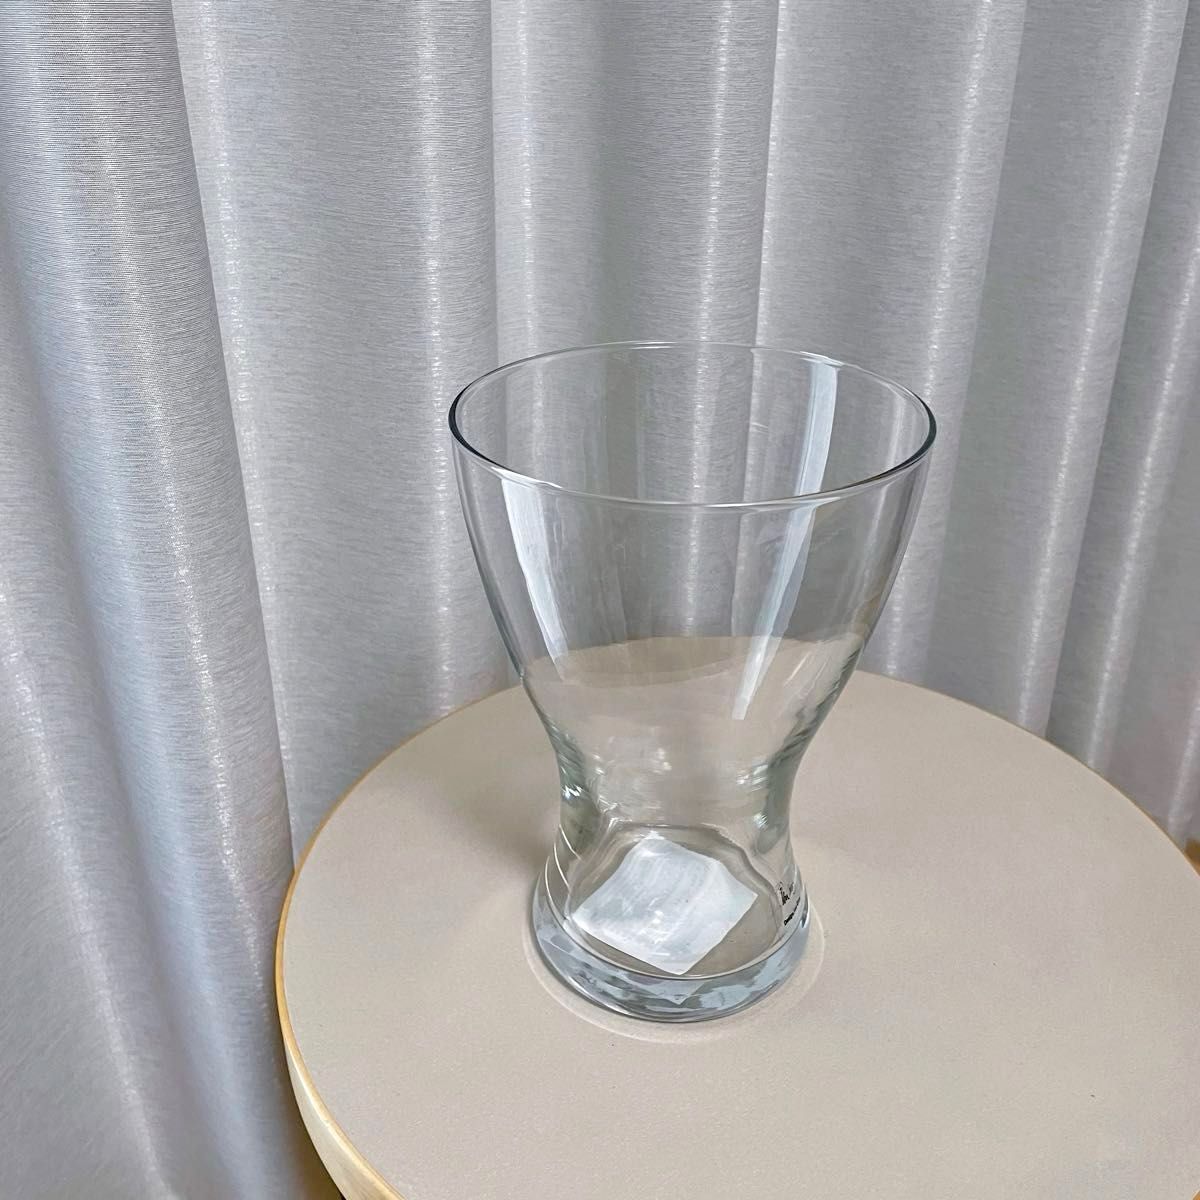 【新品】IKEA イケア フラワーベース 花瓶 クリアガラス 20cm（ヴァーセン）